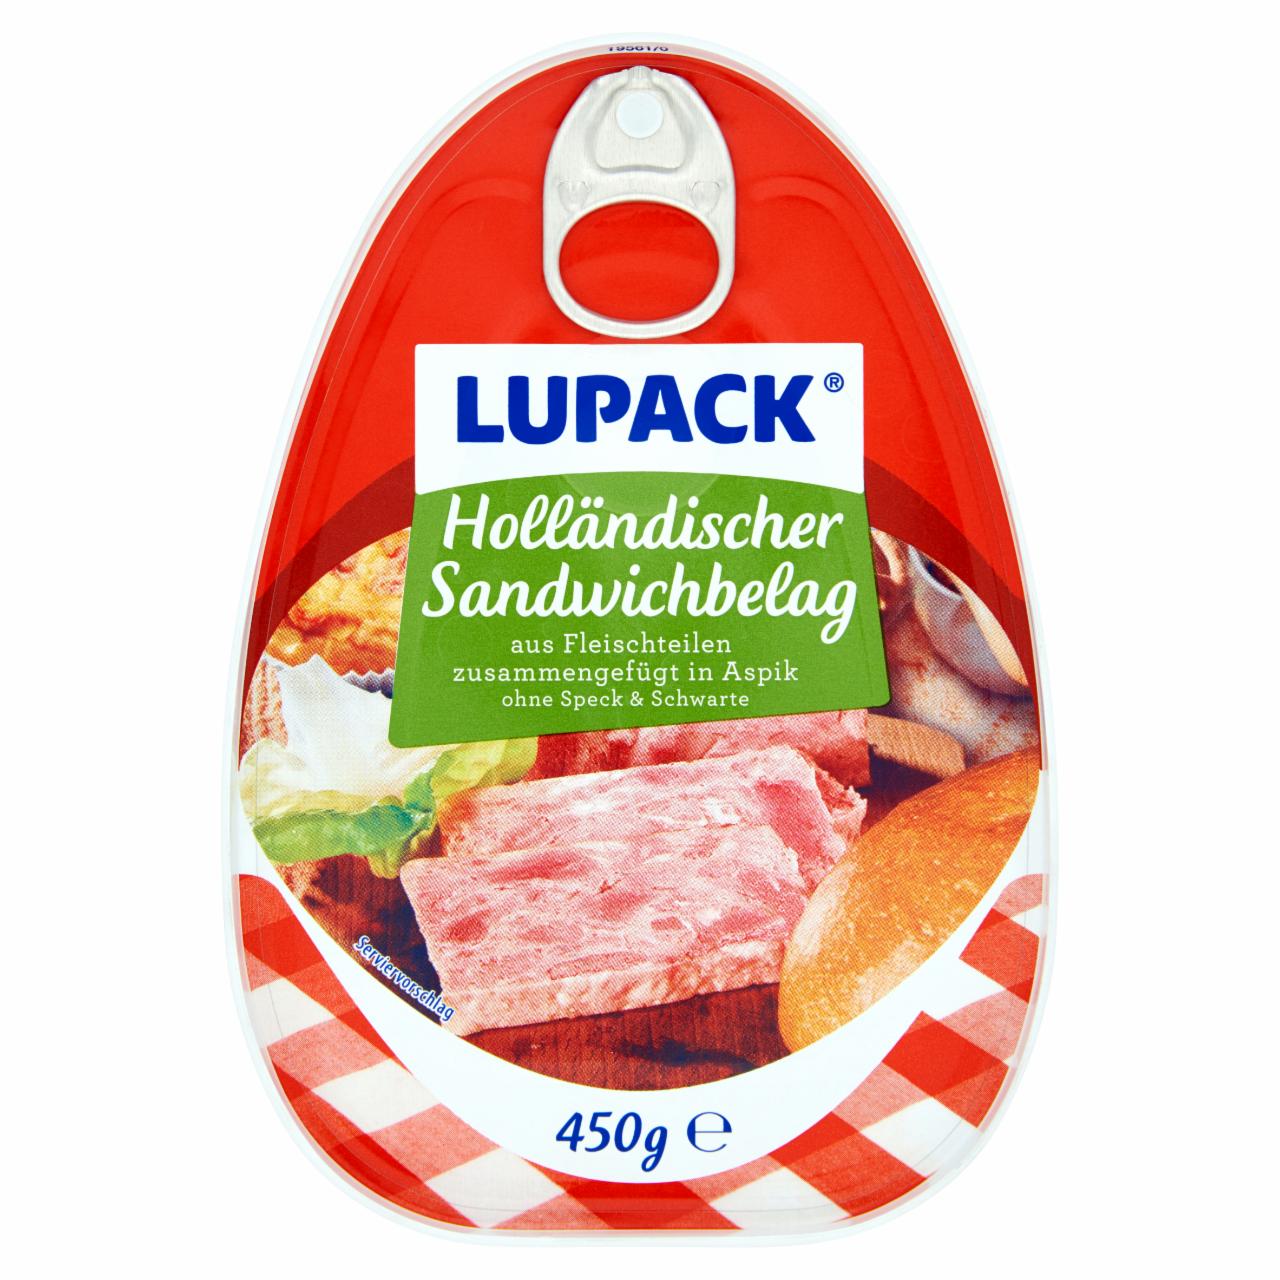 Képek - Lupack szendvicshús 450 g